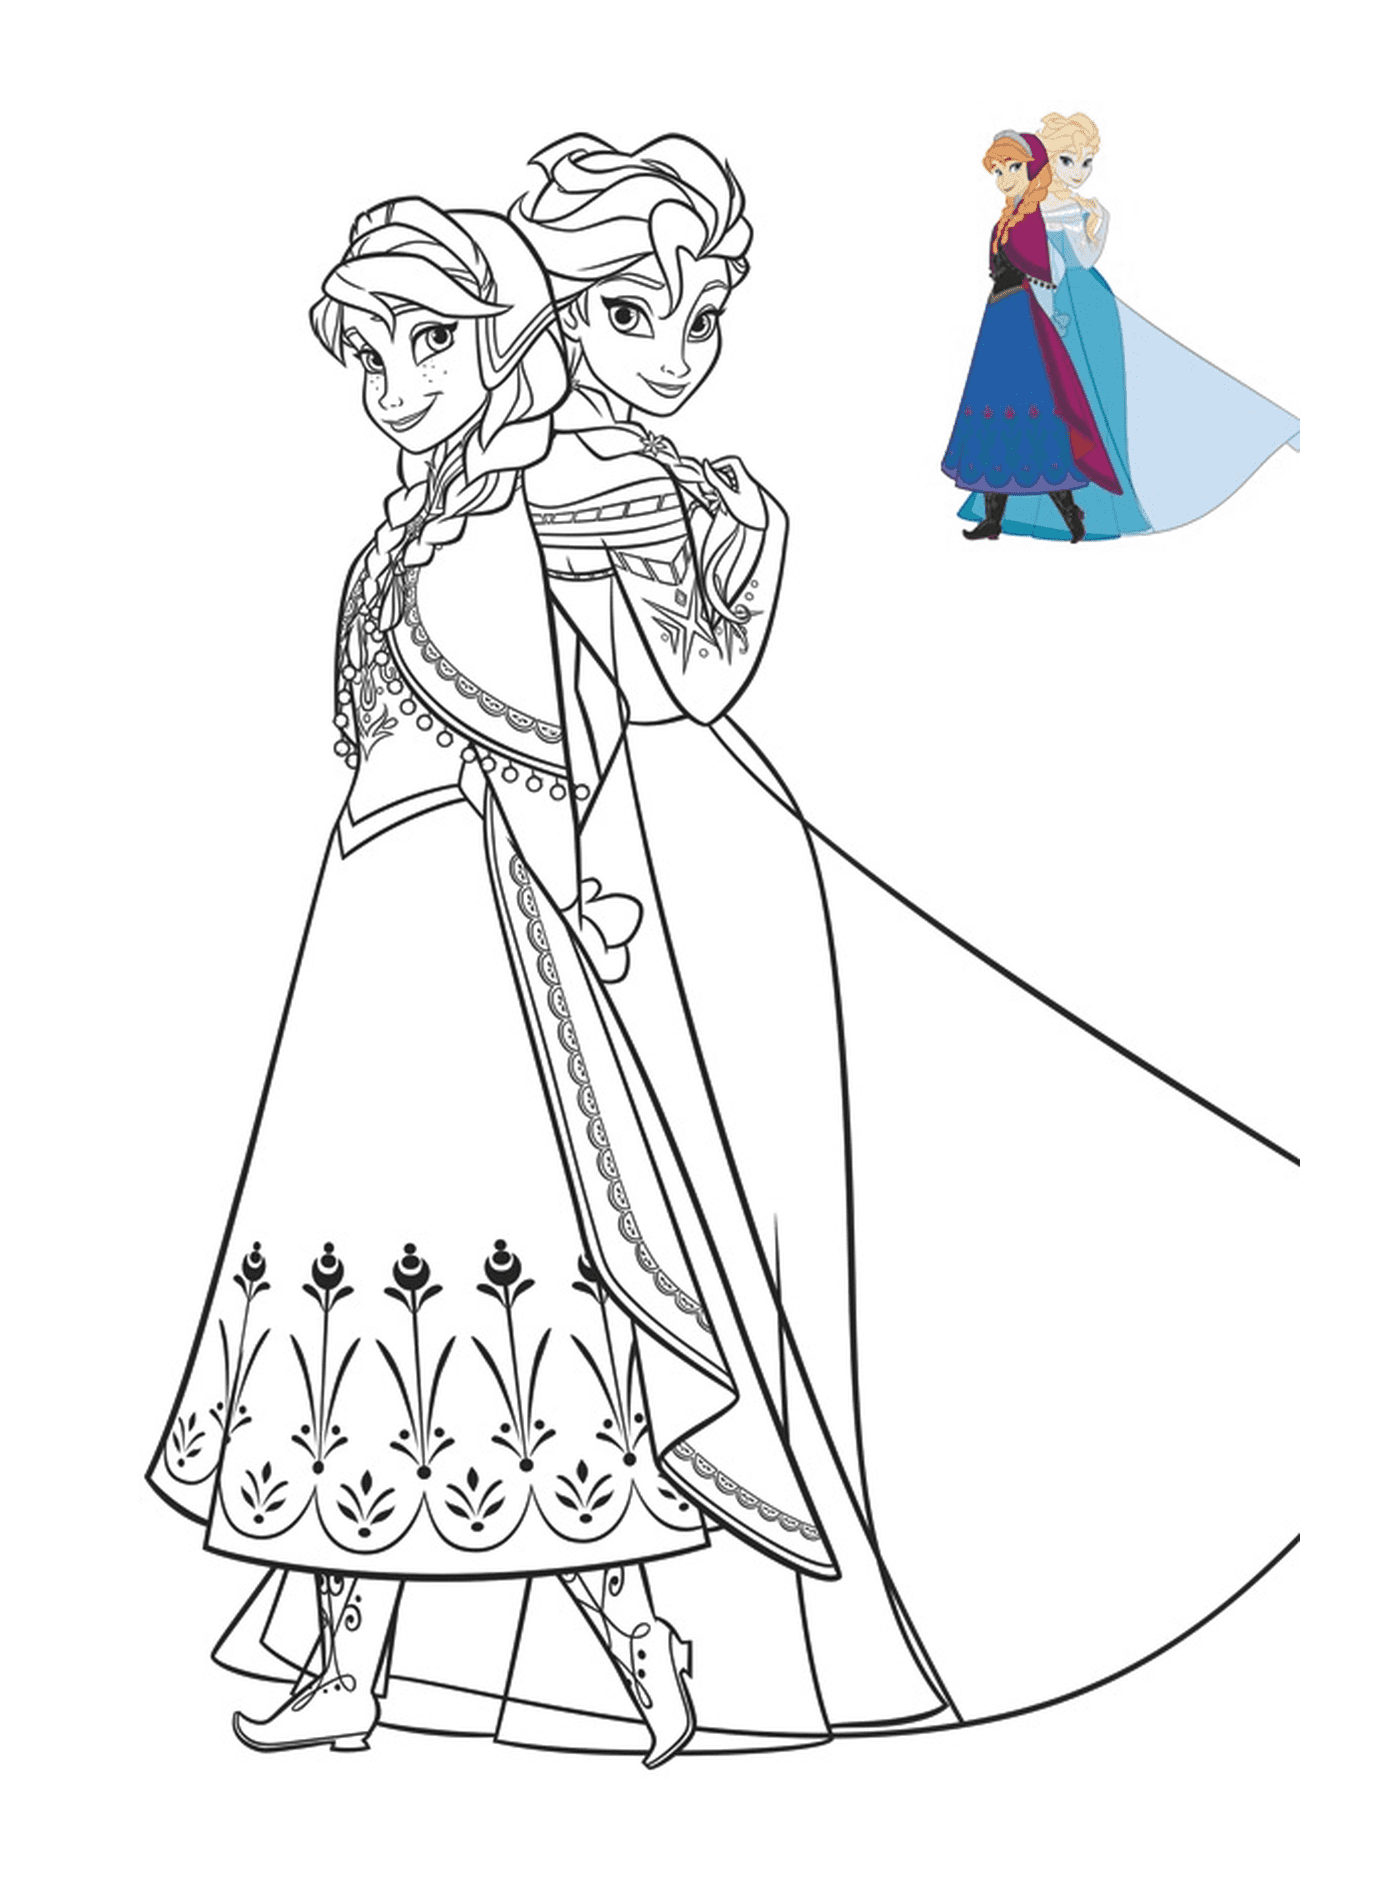  Anna y Elsa, las valientes reinas de la nieve 